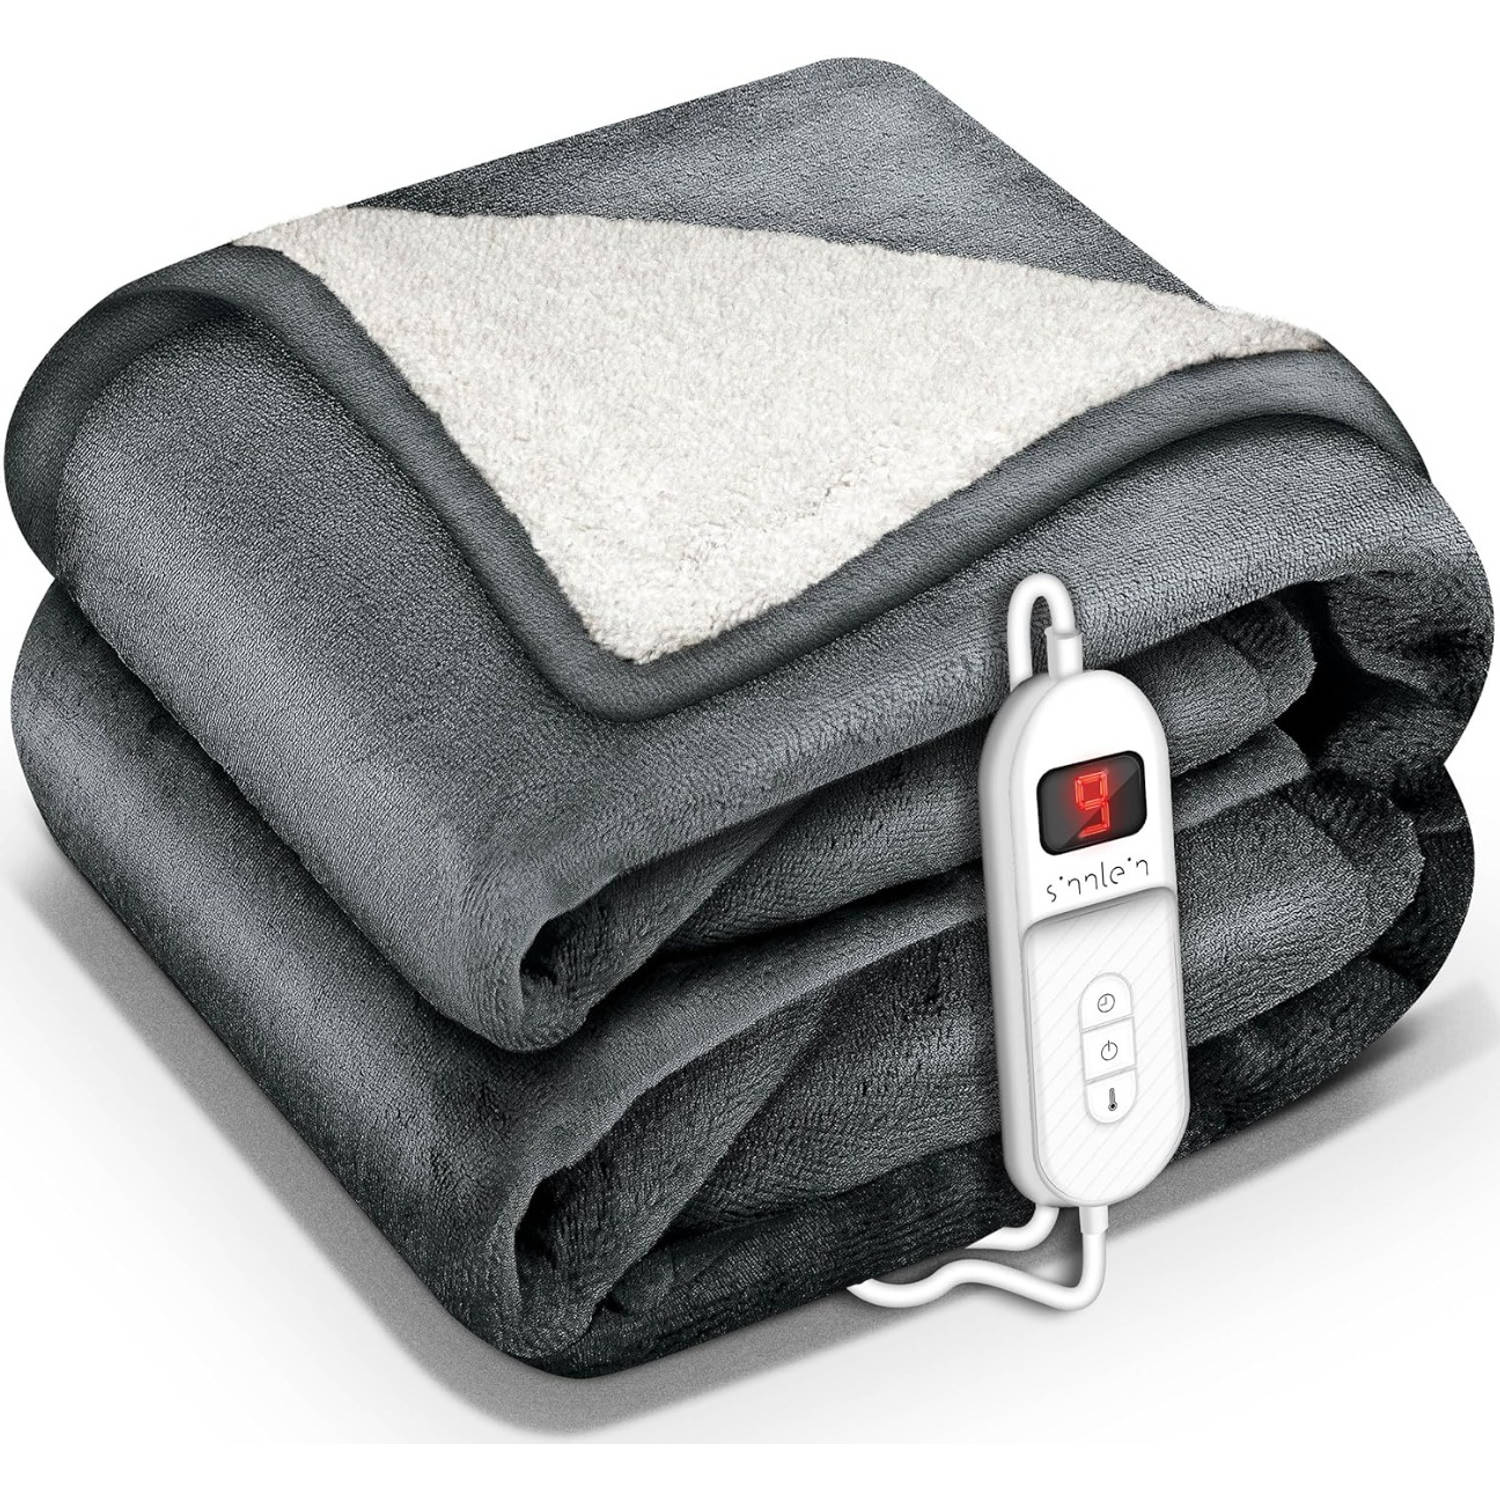 Sinnlein- Elektrische deken met automatische uitschakeling, donkergrijs, 180 x 130 cm, warmtedeken m